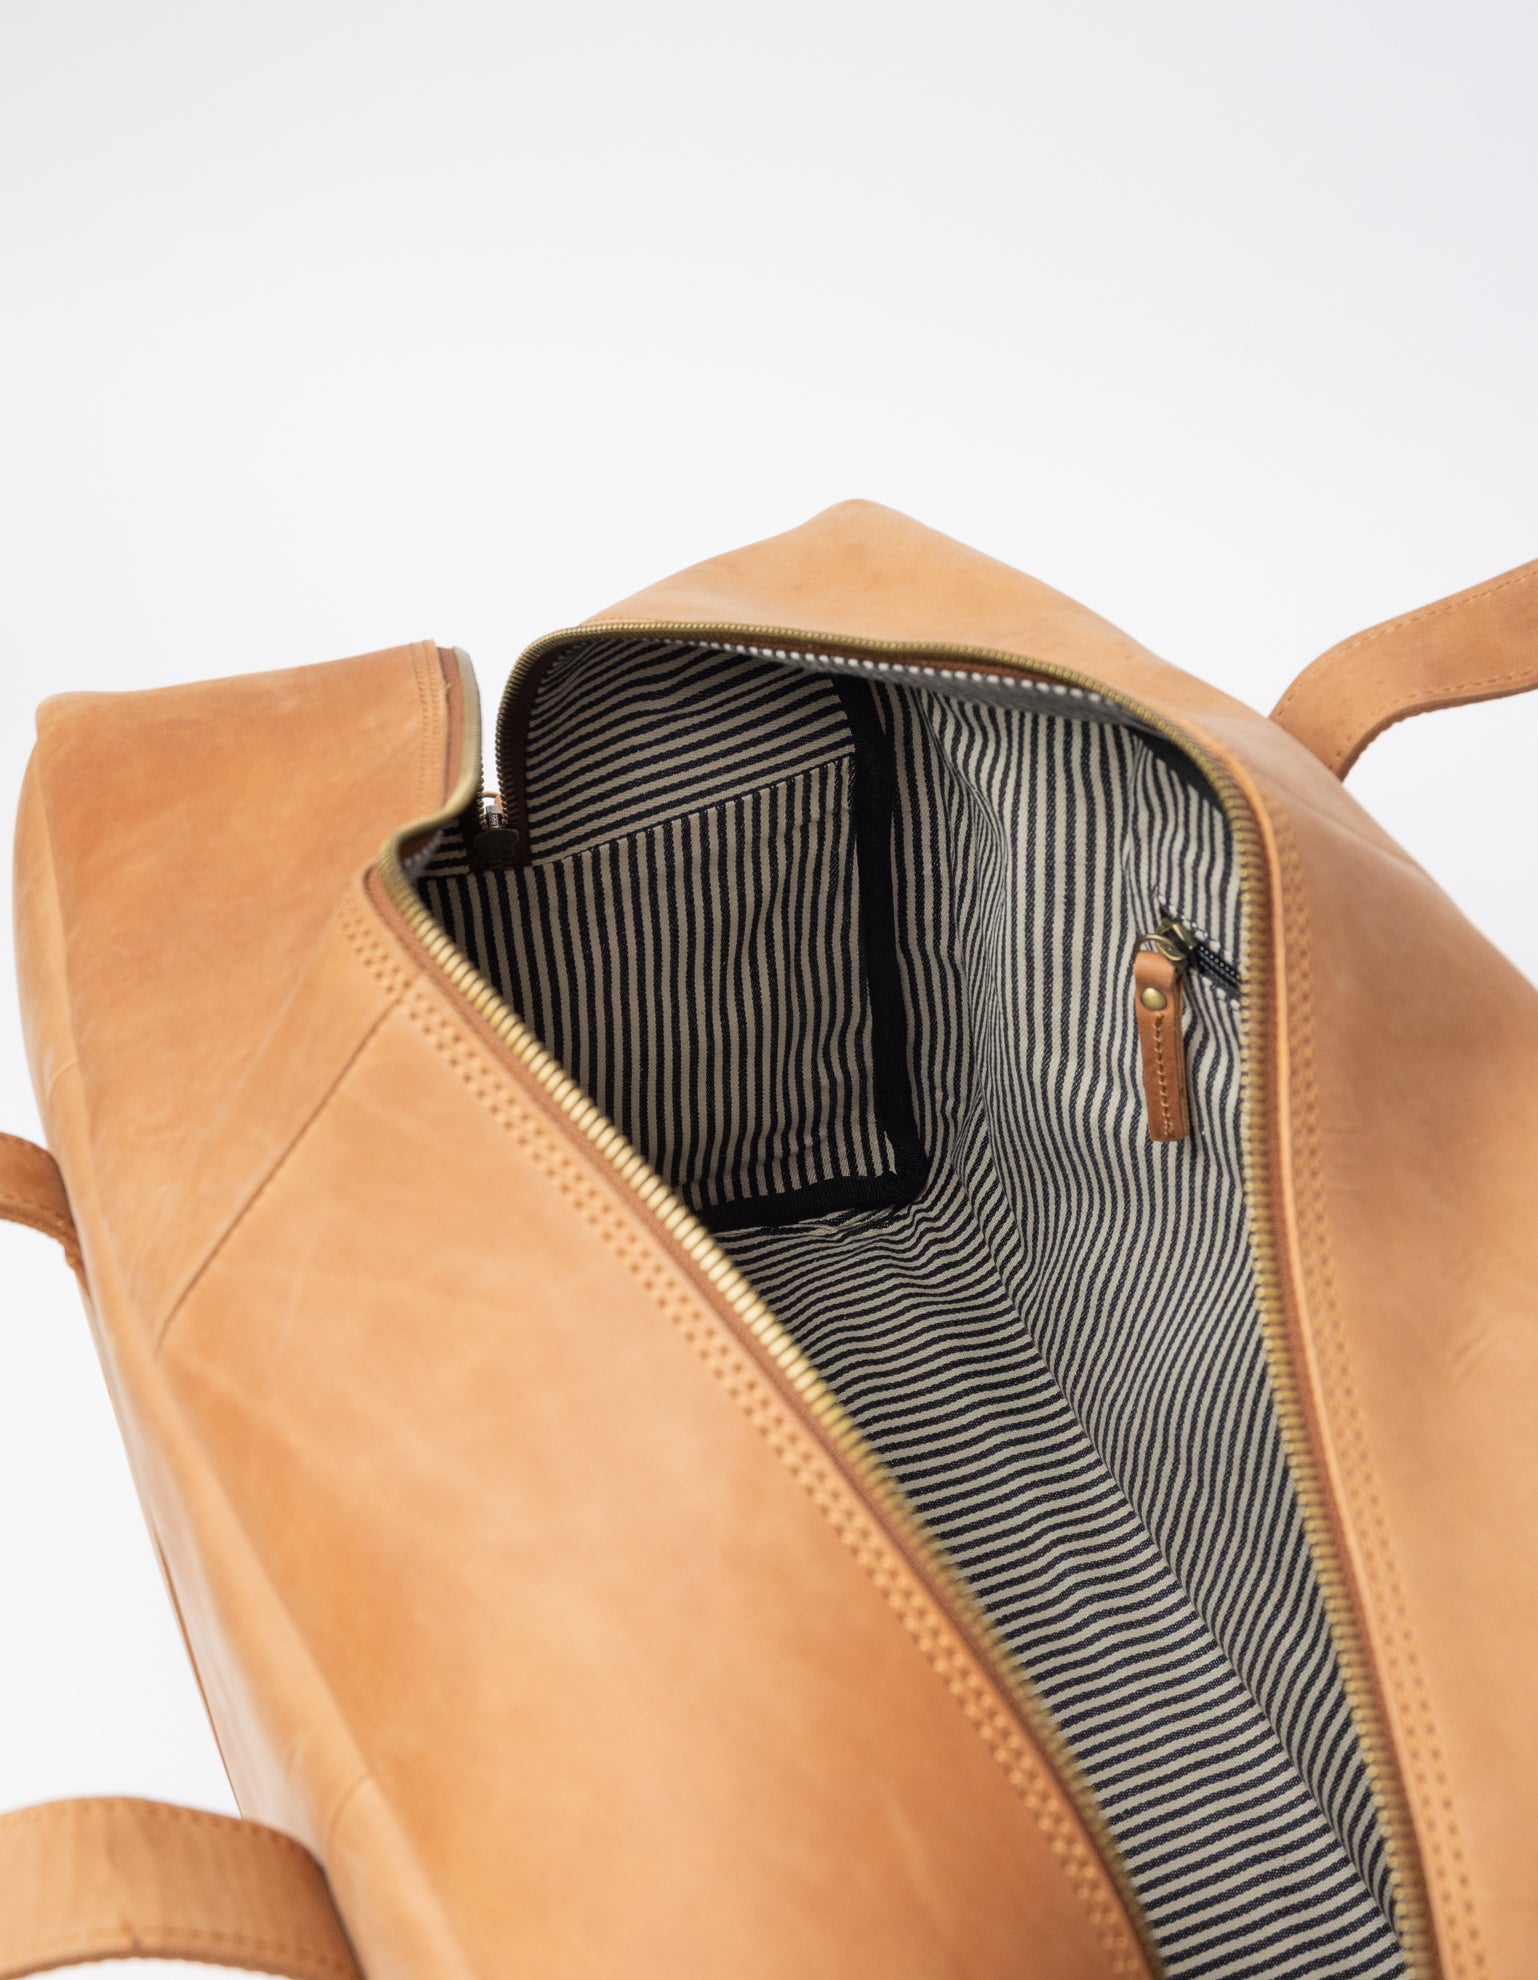 Otis Weekender Camel Hunter Leather. Large travel bag for men. Inside product image.